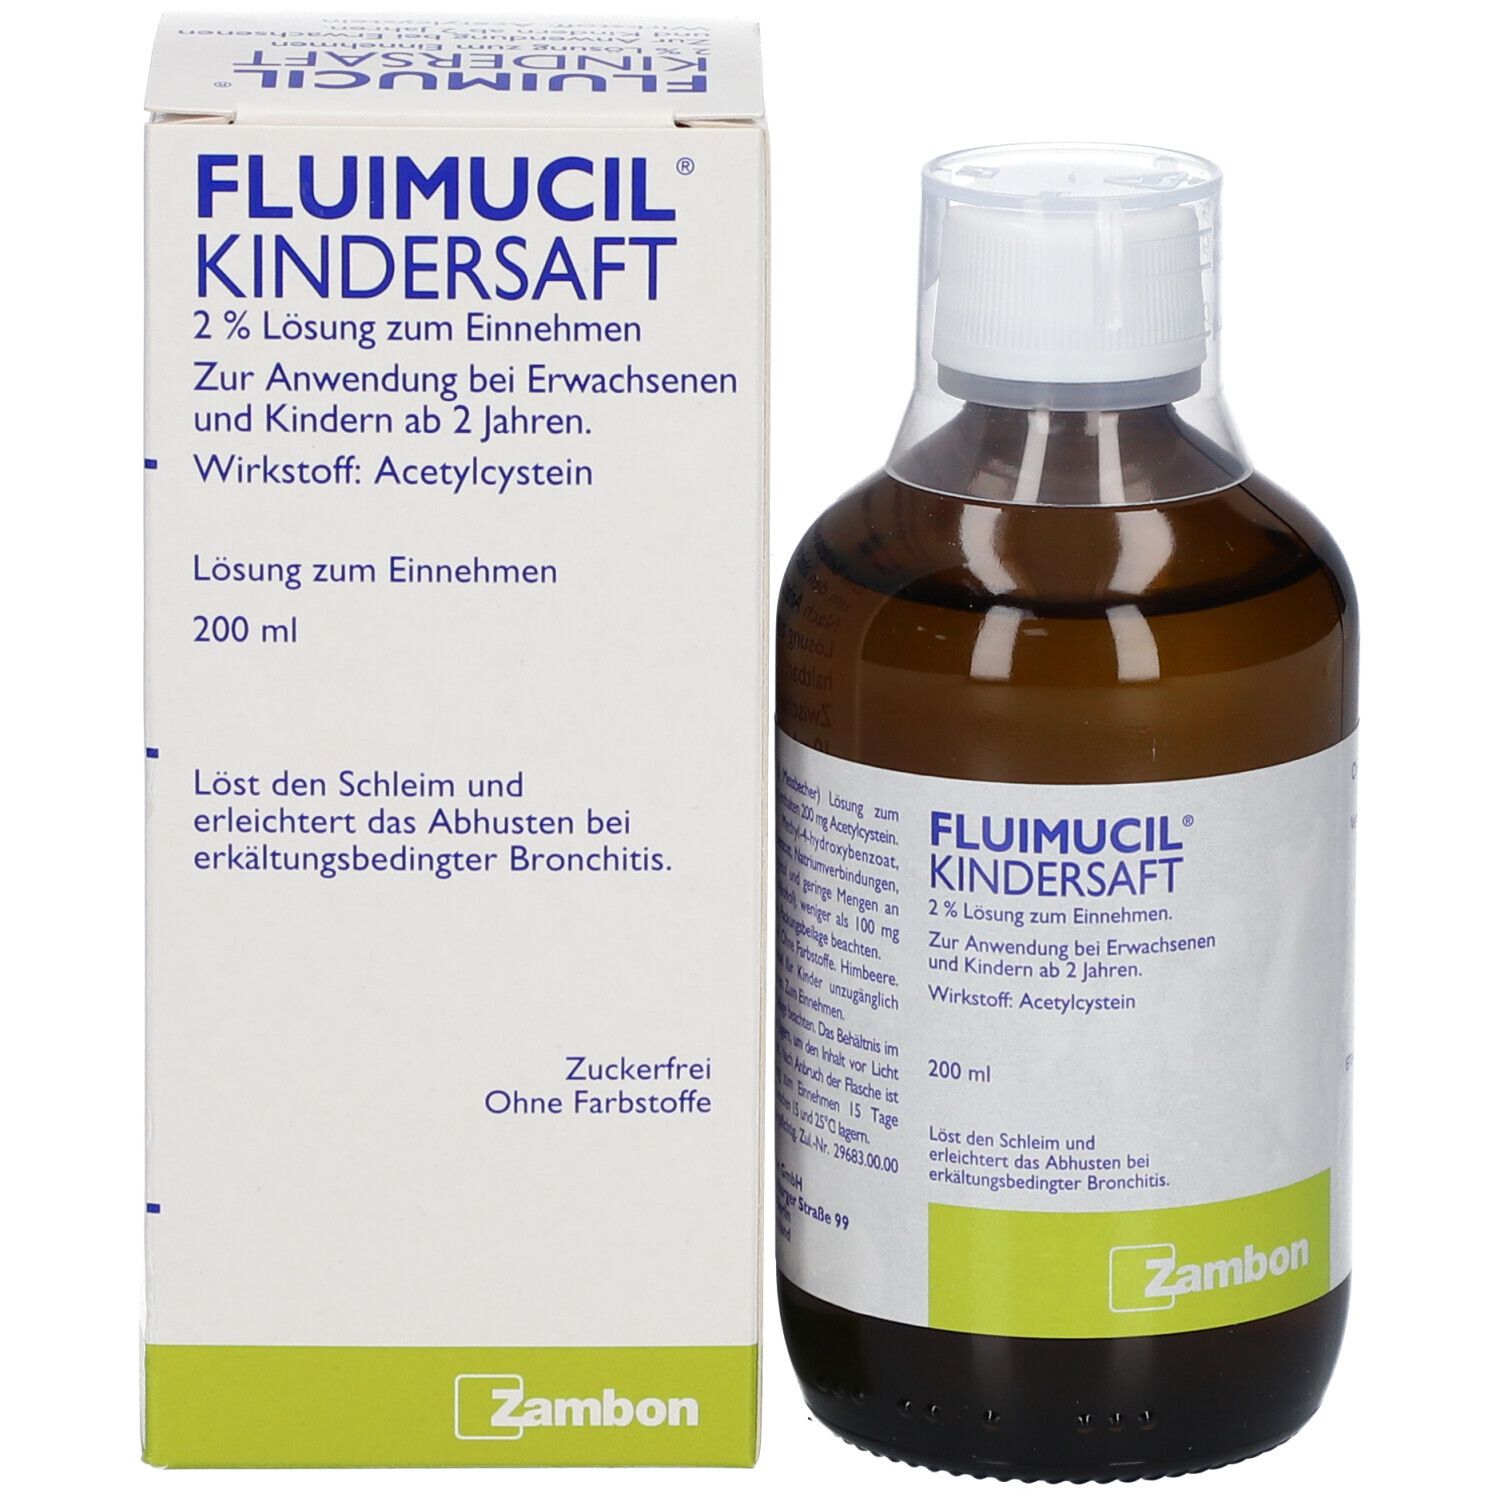 Fluimucil® Kindersaft